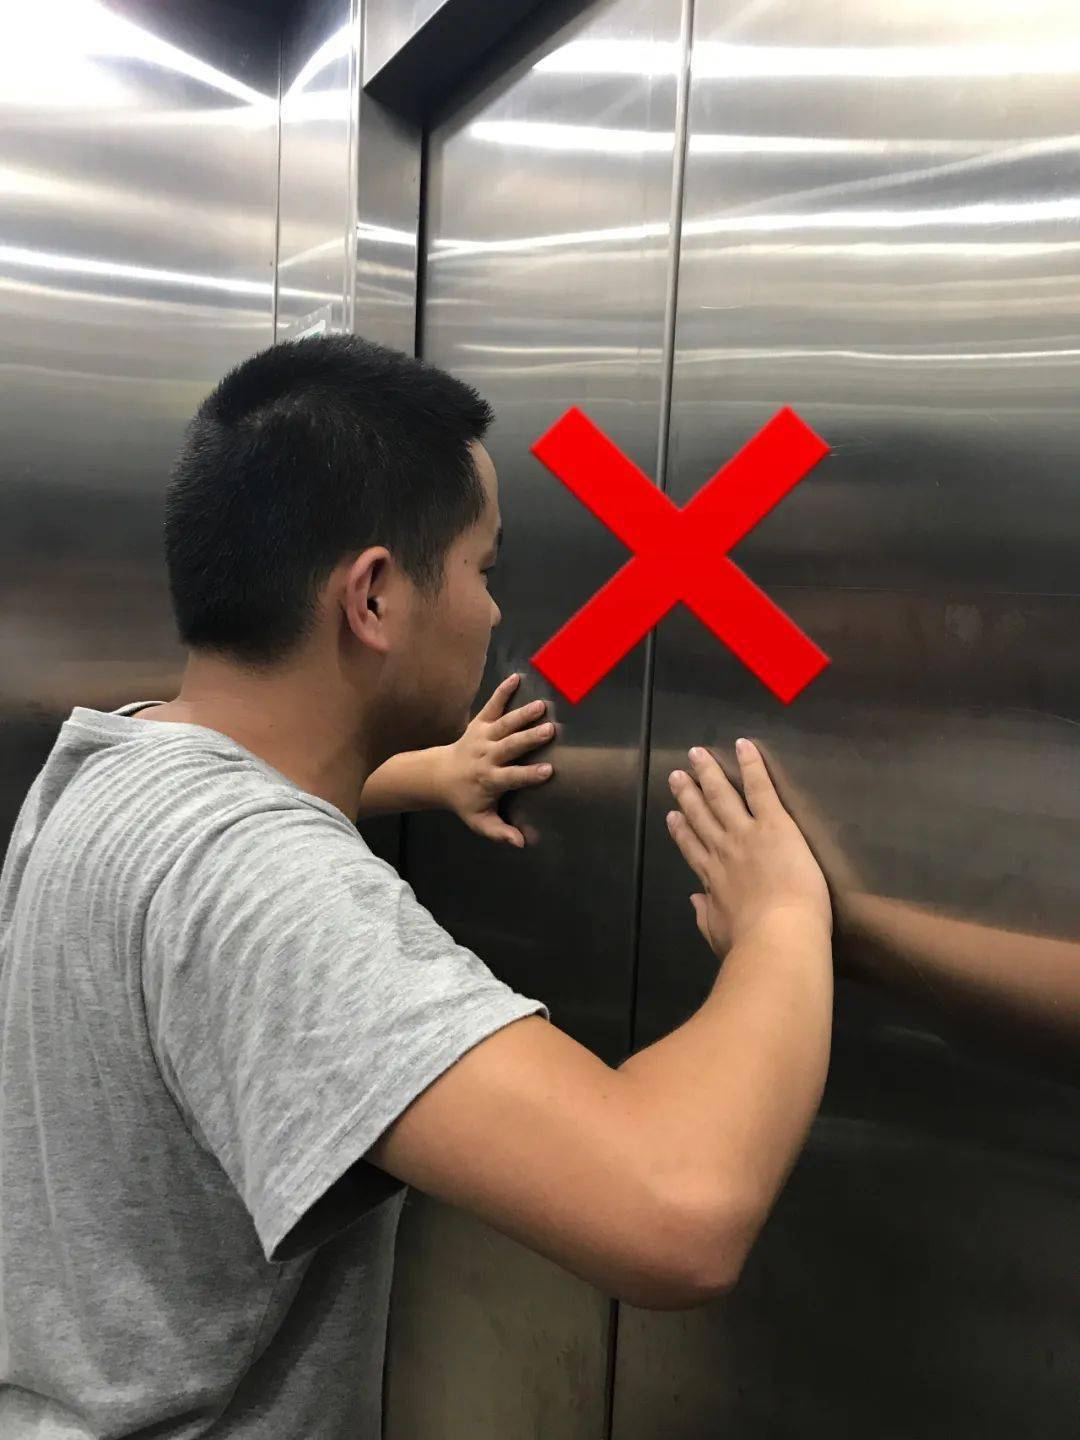 安全知识丨被困在电梯里了该怎么办